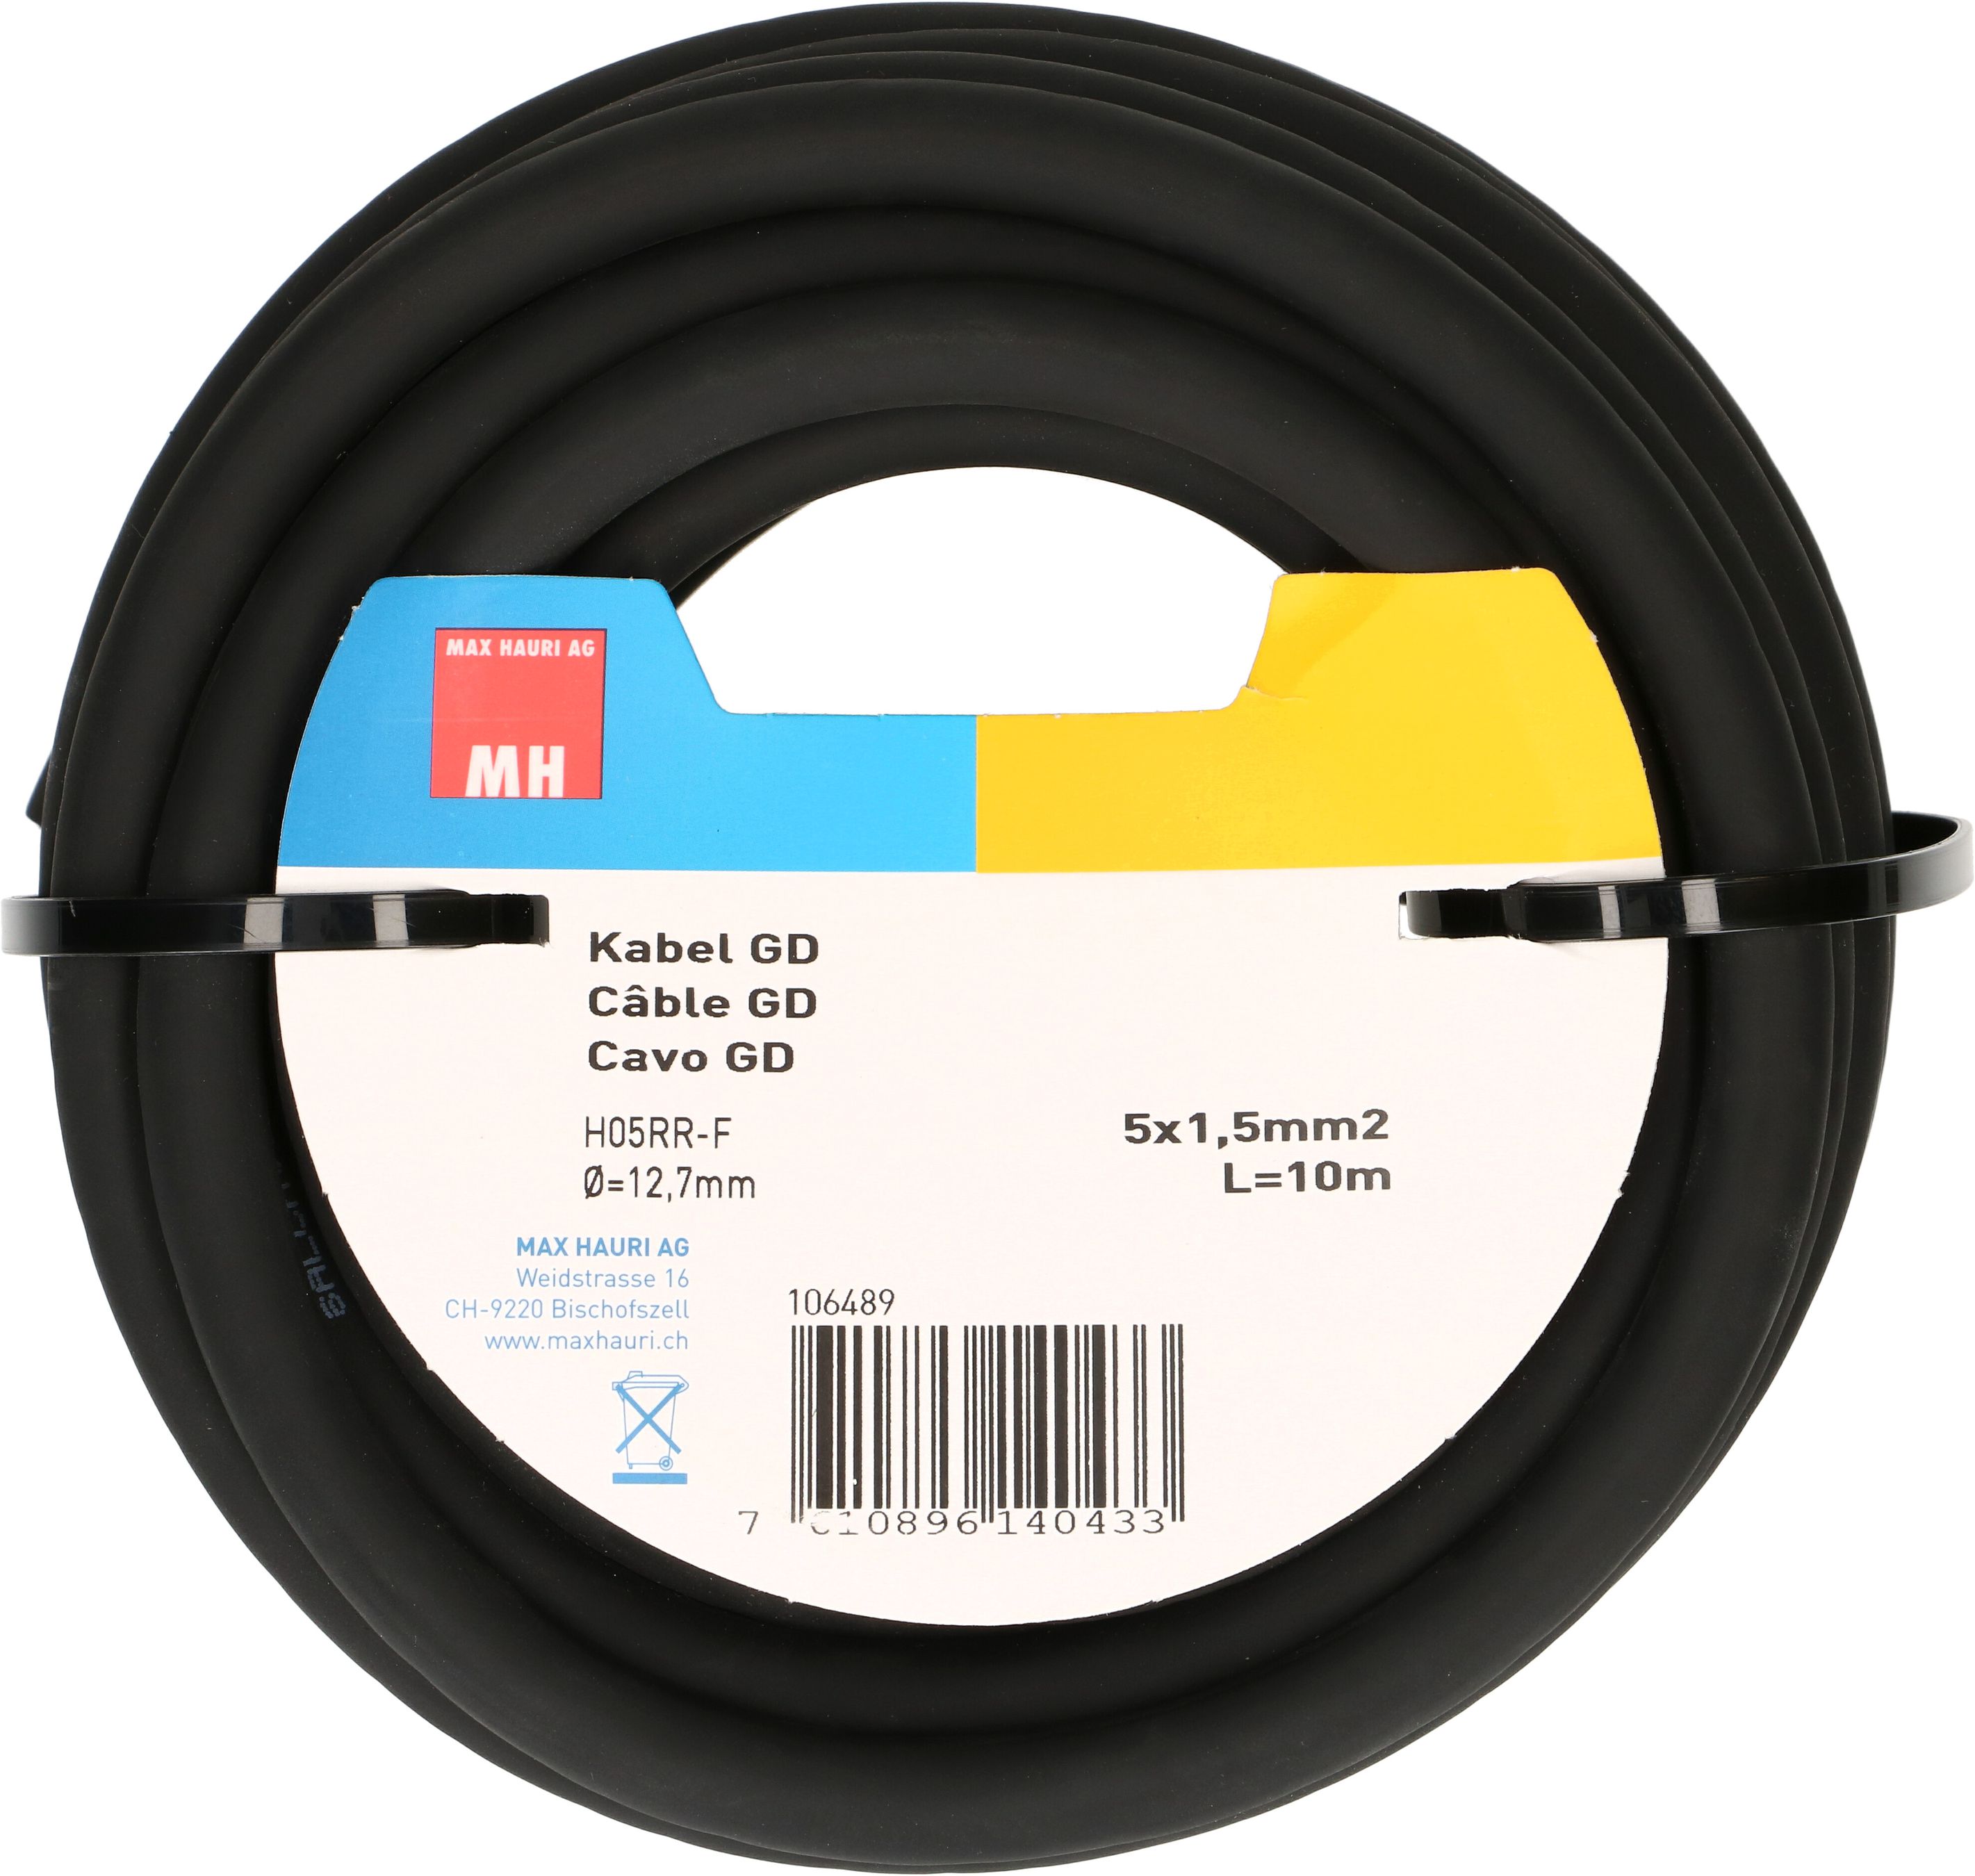 câble GD H05RR-F5G1.5 10m noir